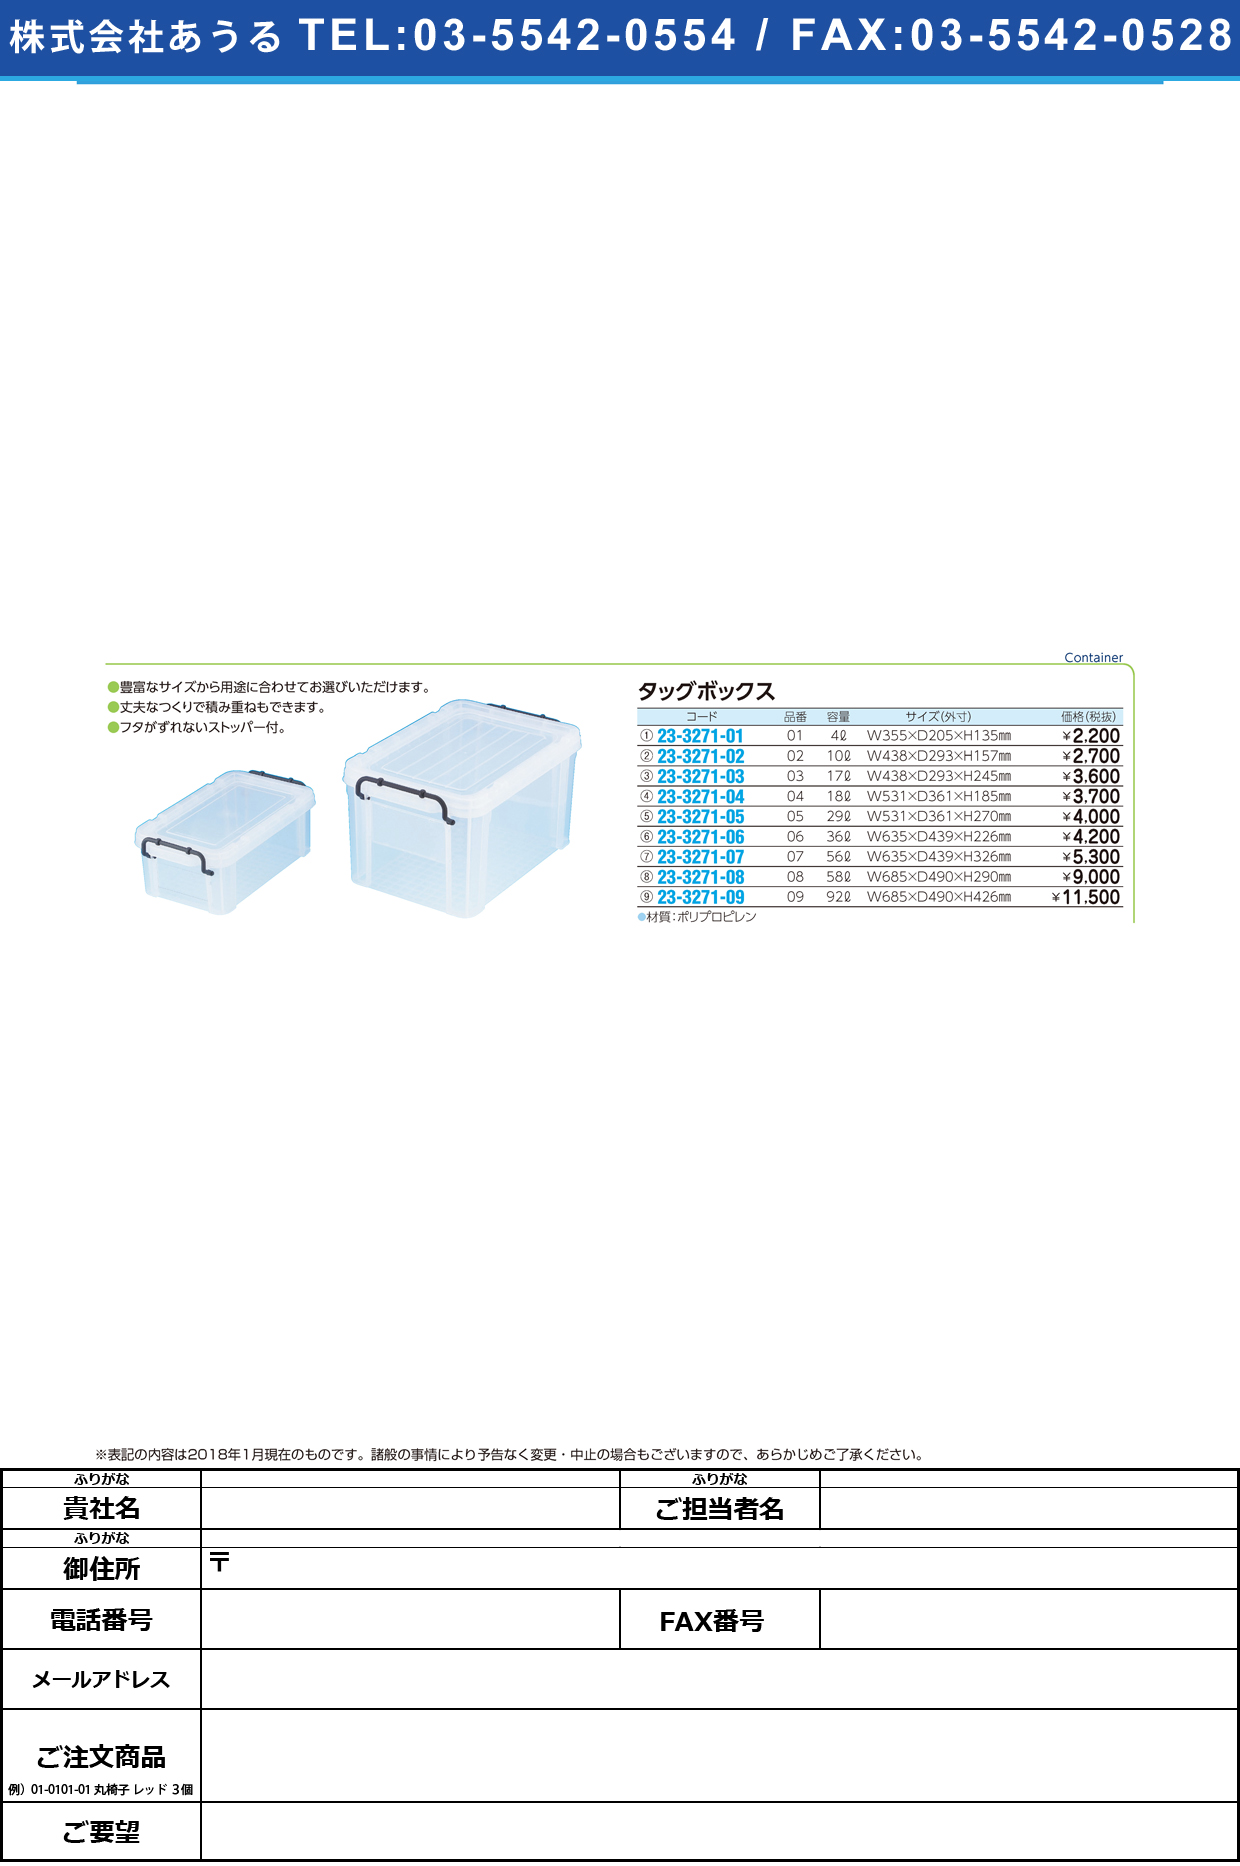 (23-3271-08)タッグボックス 08(58L) ﾀｯｸﾞﾎﾞｯｸｽ【1個単位】【2019年カタログ商品】